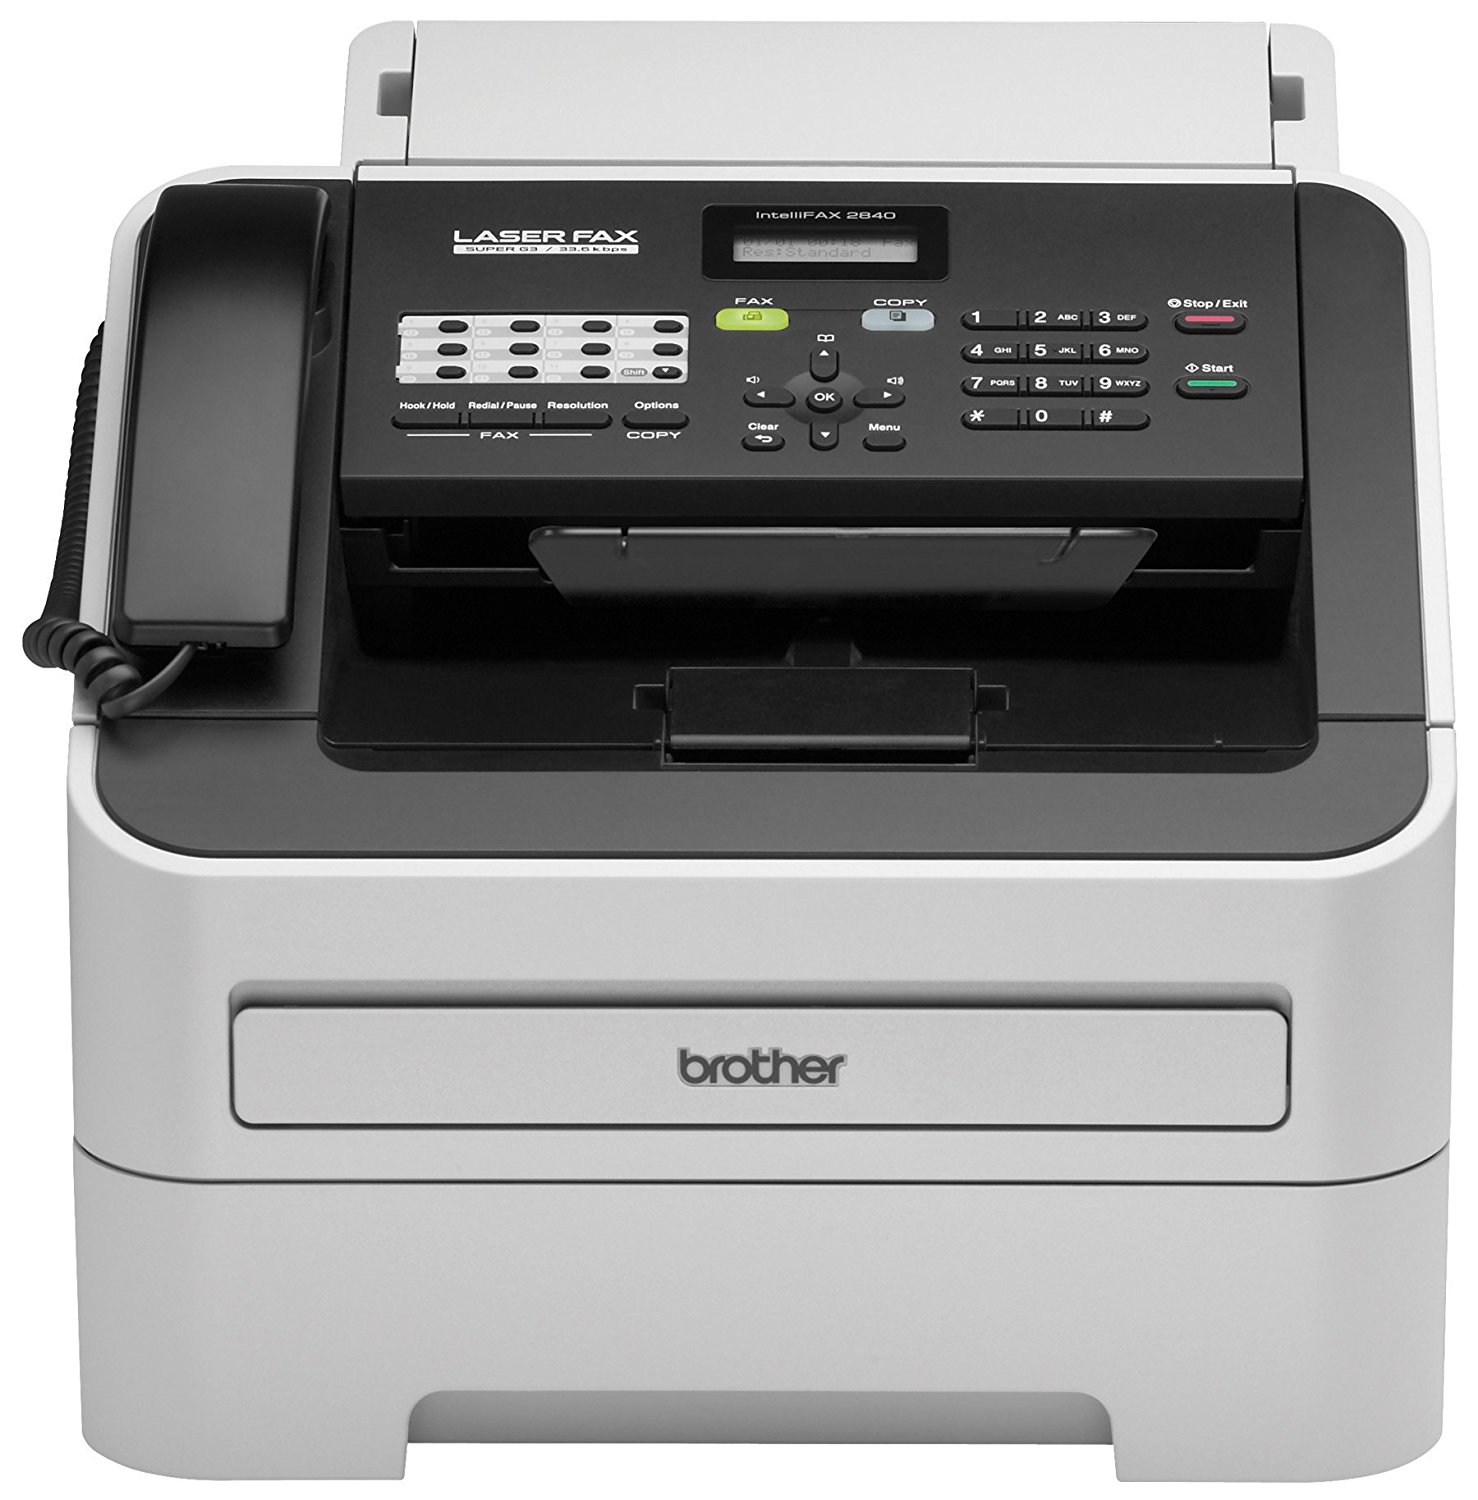 Brother Printer Imprimante monochrome sans fil RFAX2840 avec scanner et fax (remise à neuf certifiée)